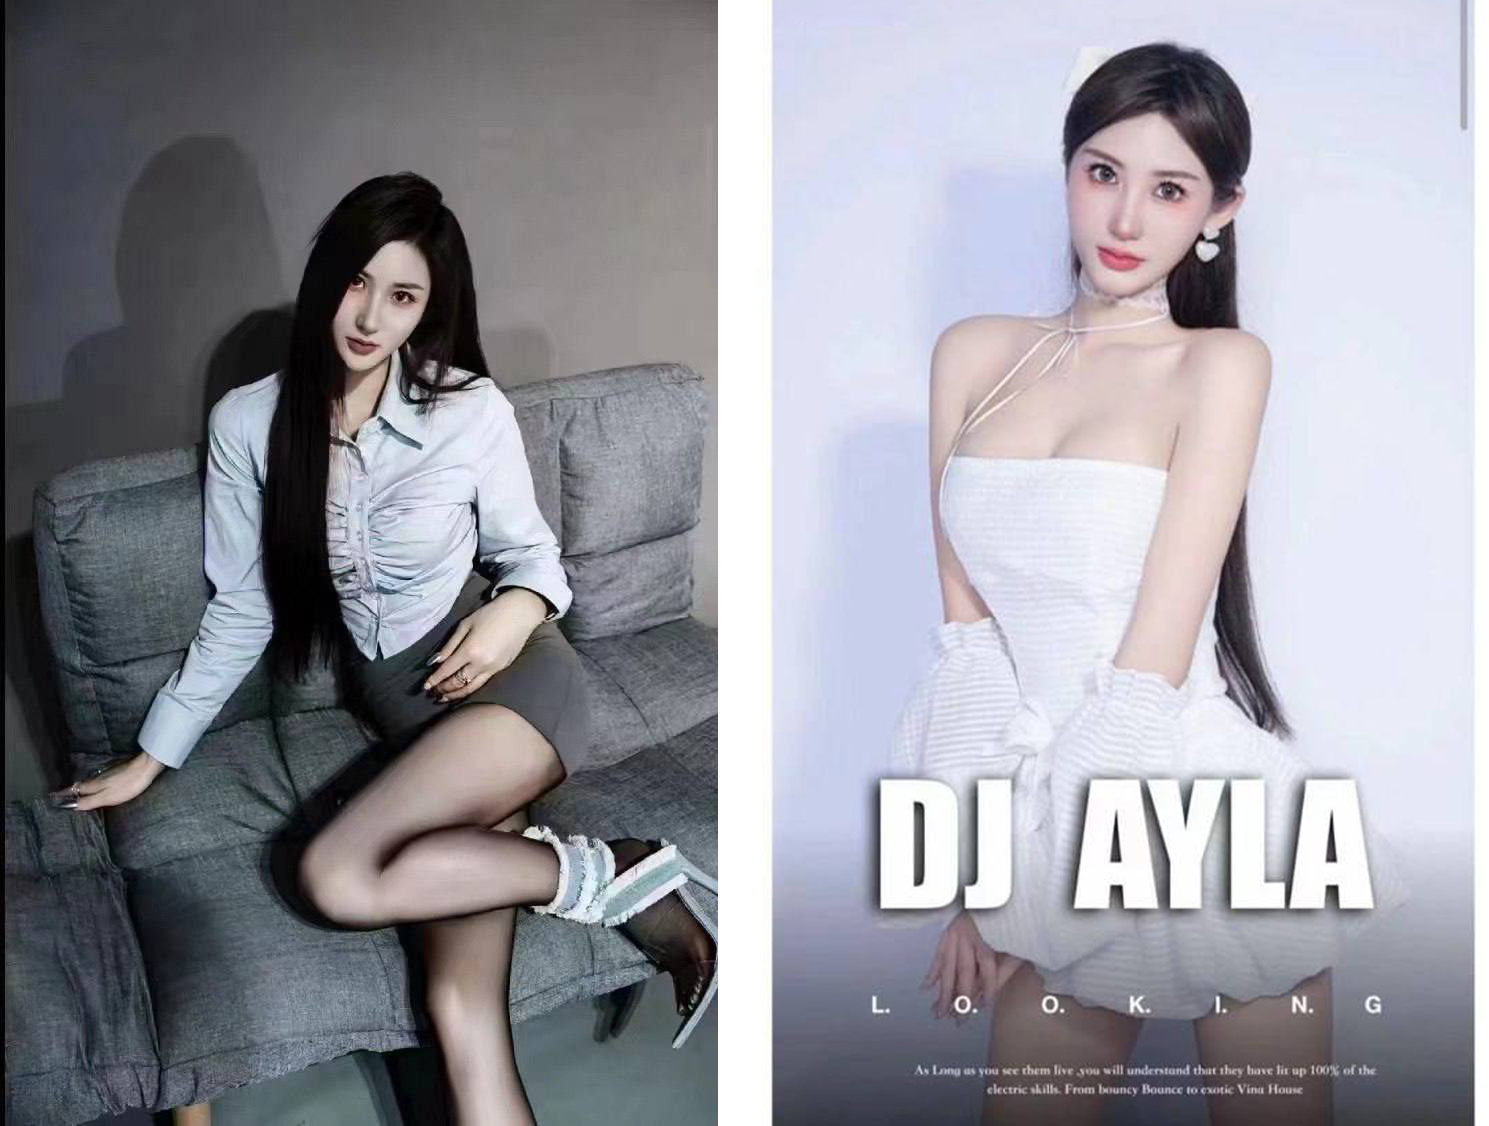 広東省のナイトクラブで、女性DJがスカートの下からバキュームでディスクをプレイしているところを撮影された。